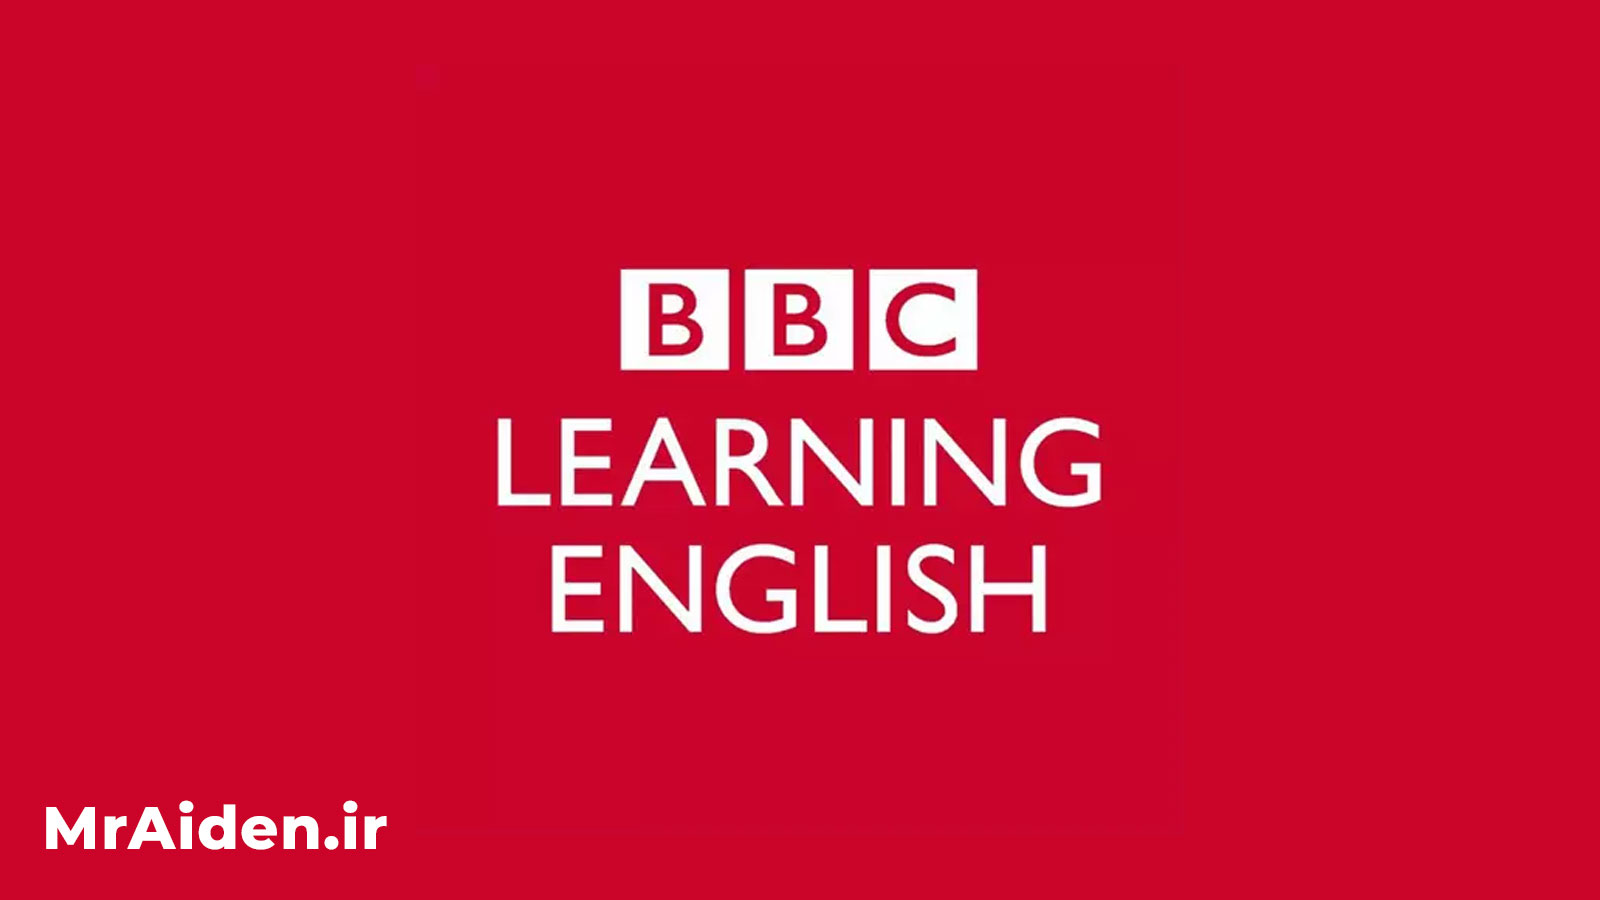 پادکست انگلیسی BBC learning english